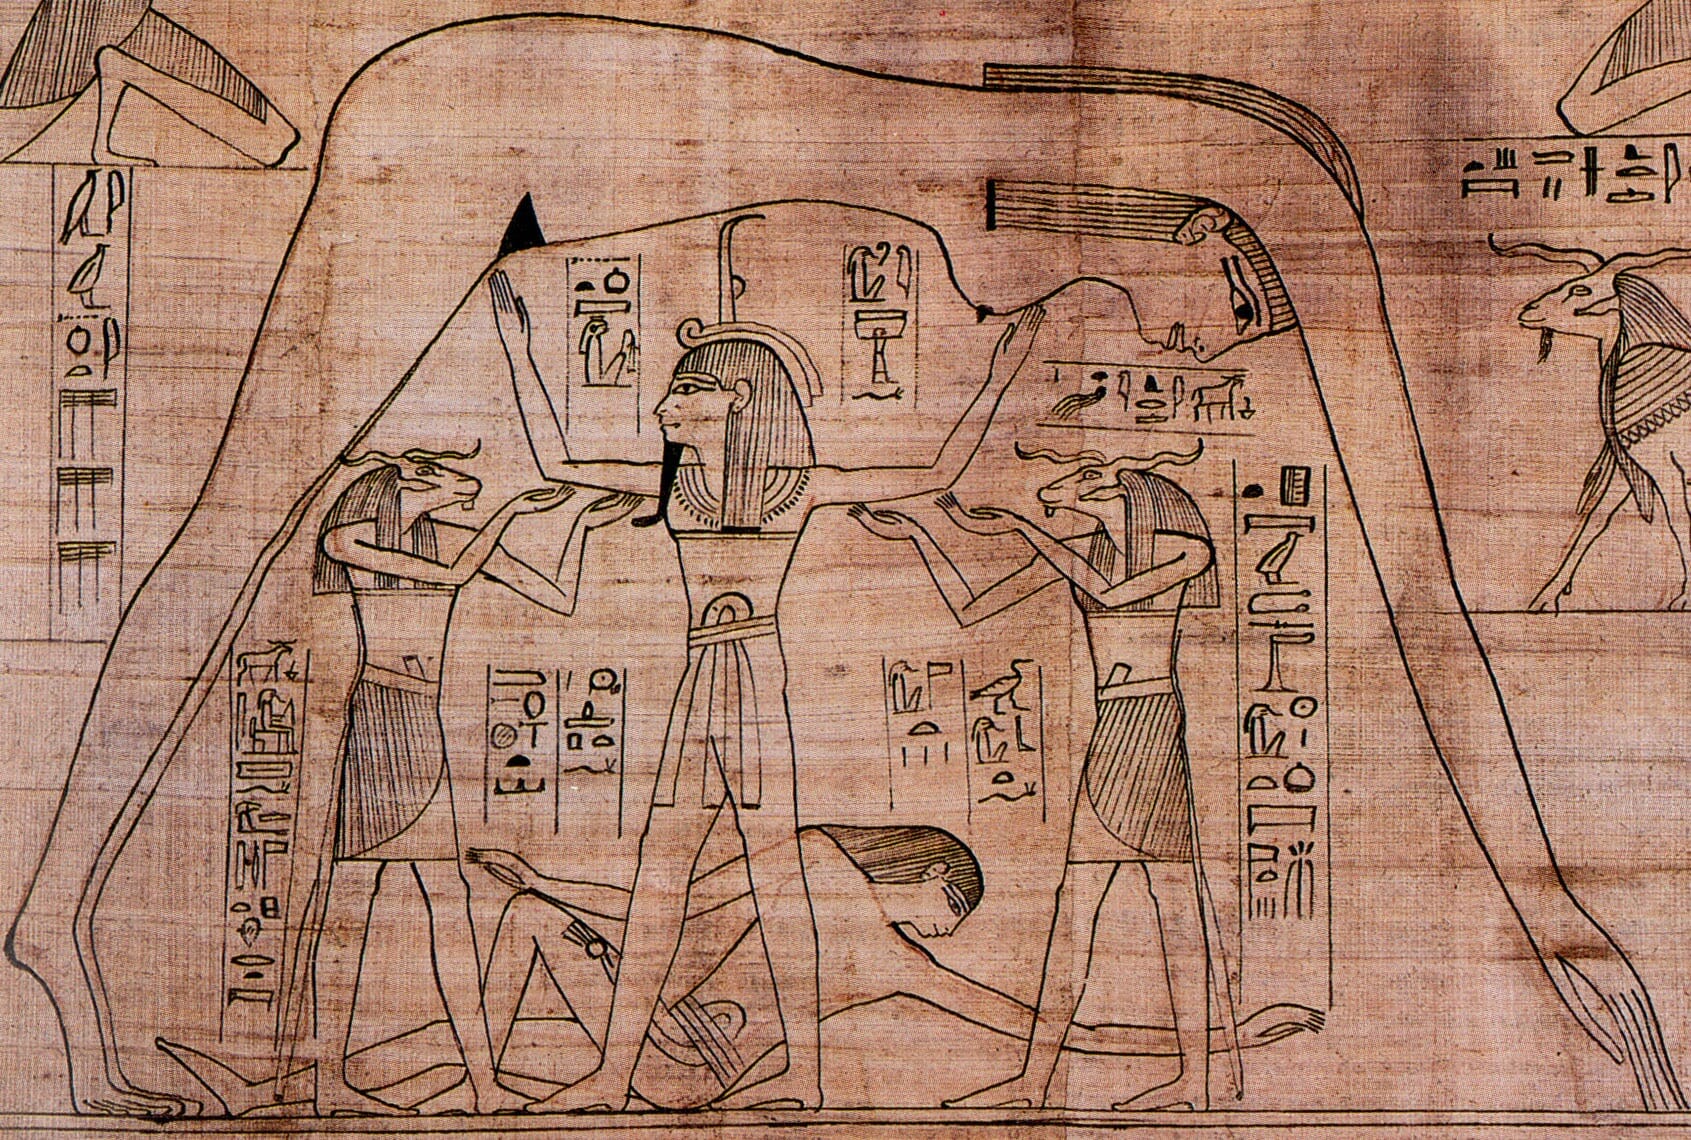 De Egyptische hemelgodin Nut omgeeft de mensen en rust op de aarde(god) Geb. Hier is de man-vrouw polariteit dus omgekeerd.